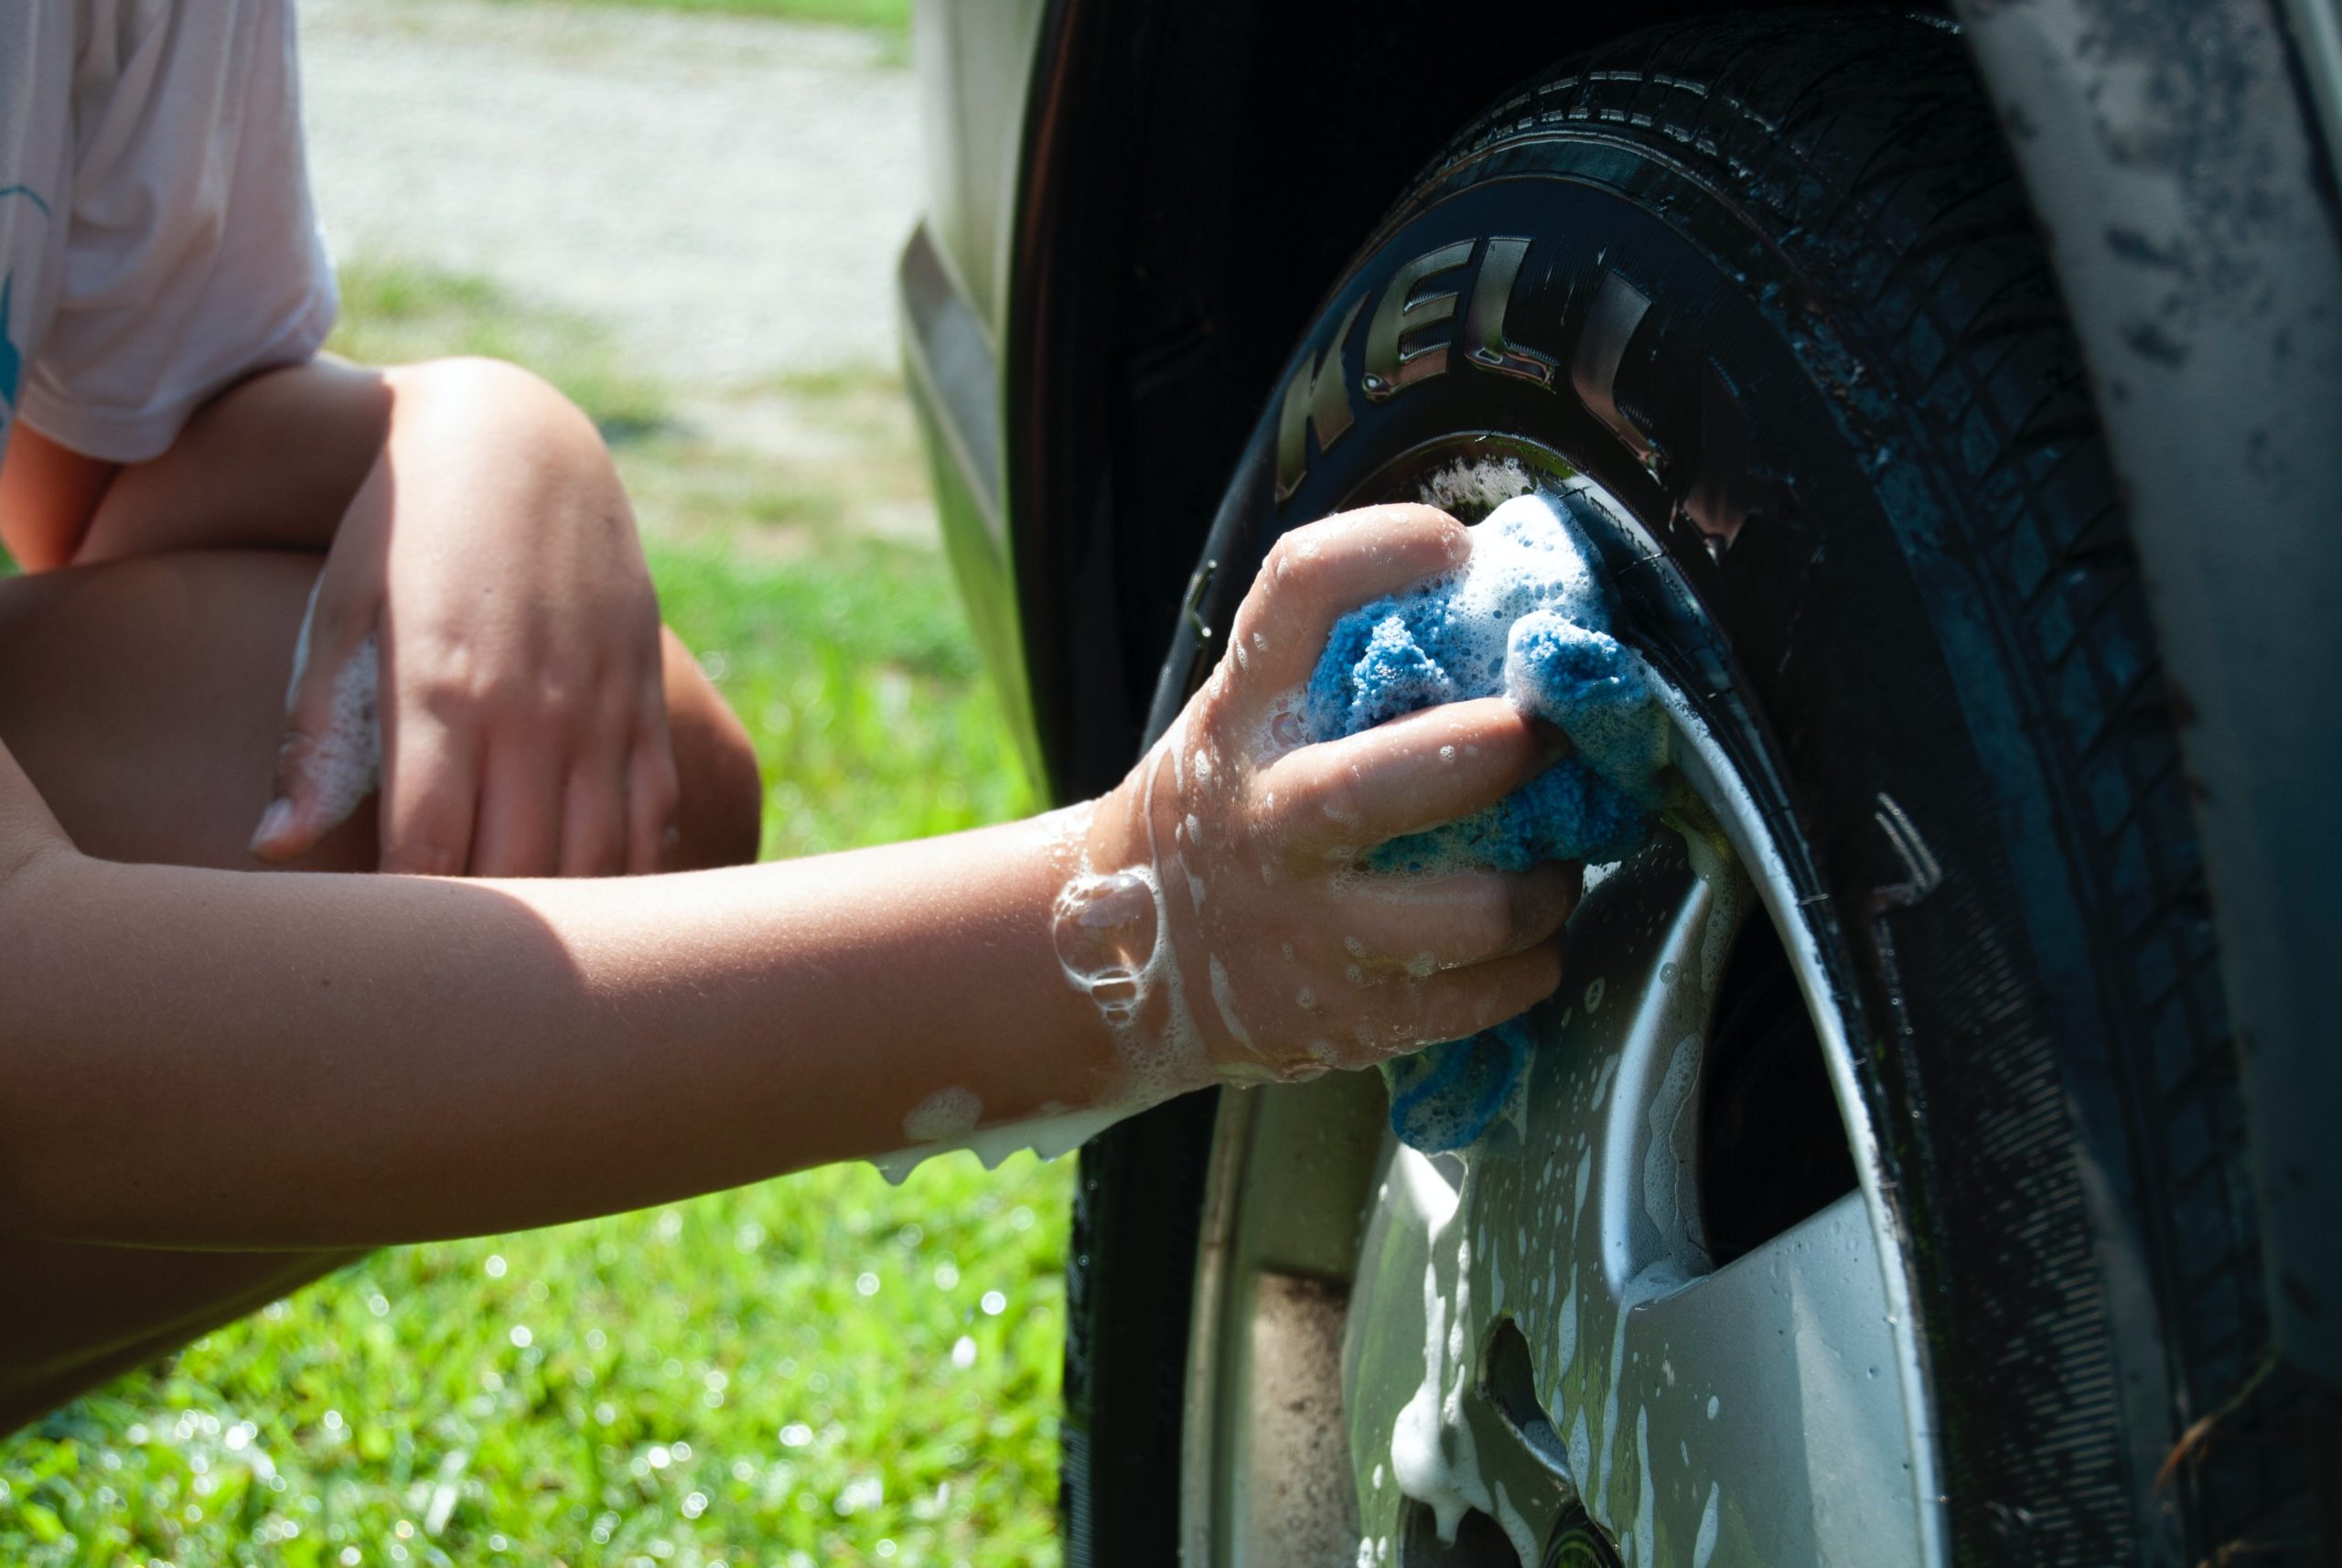 Adam el yıkama araba bir araba yıkama parçası, iyi bir güçlendirici kulüp bağış toplama